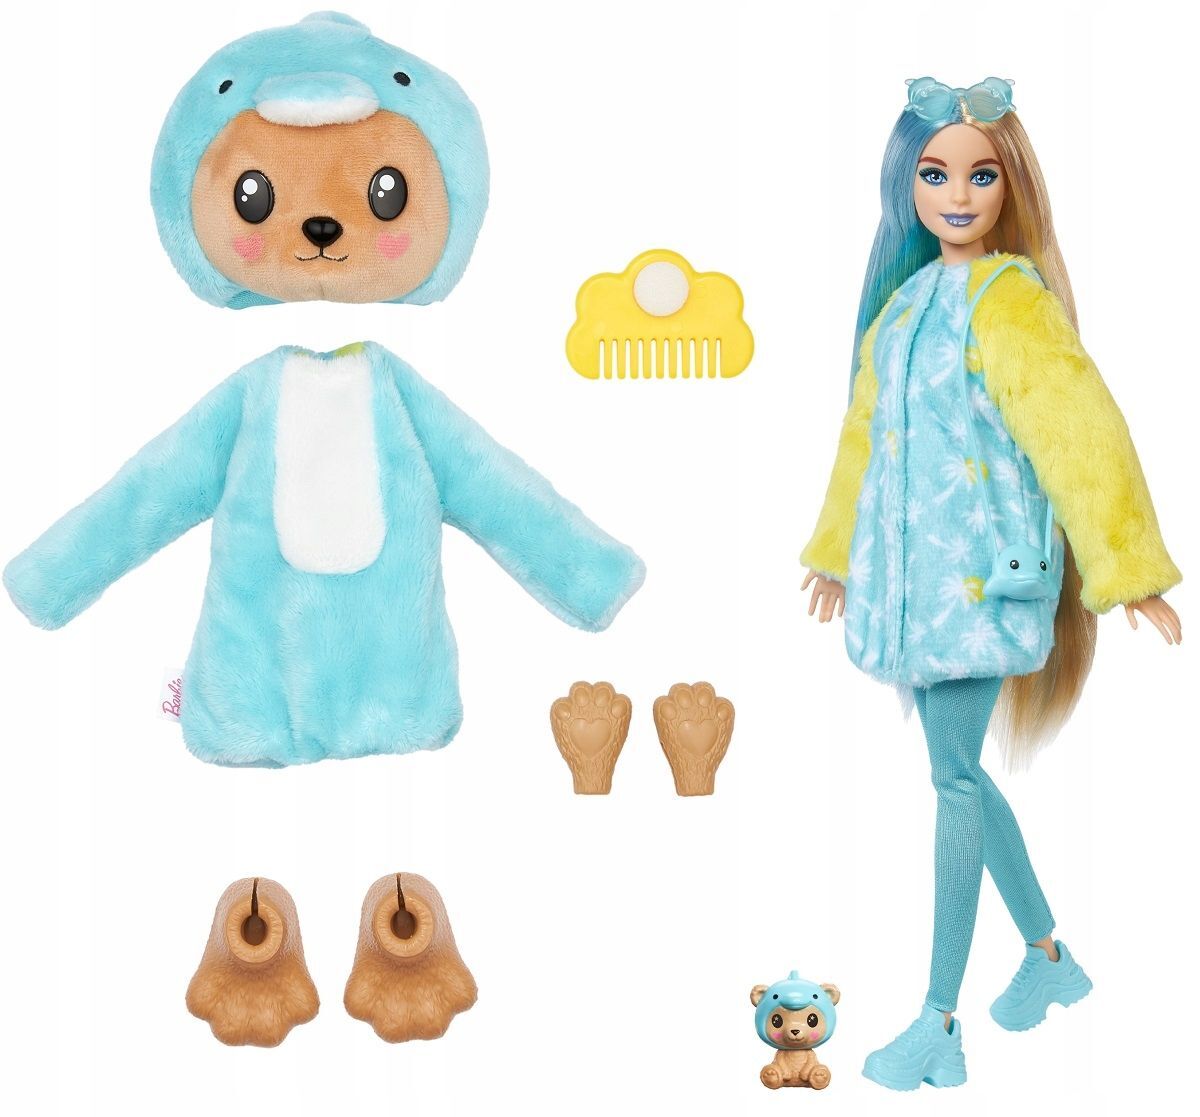 Кукла Barbie Cutie Reveal Dolphin Bear Плюшевый мишка в образе дельфина, HRK25 кукла барби cutie reveal подарочный набор barbie с 35 сюрпризами